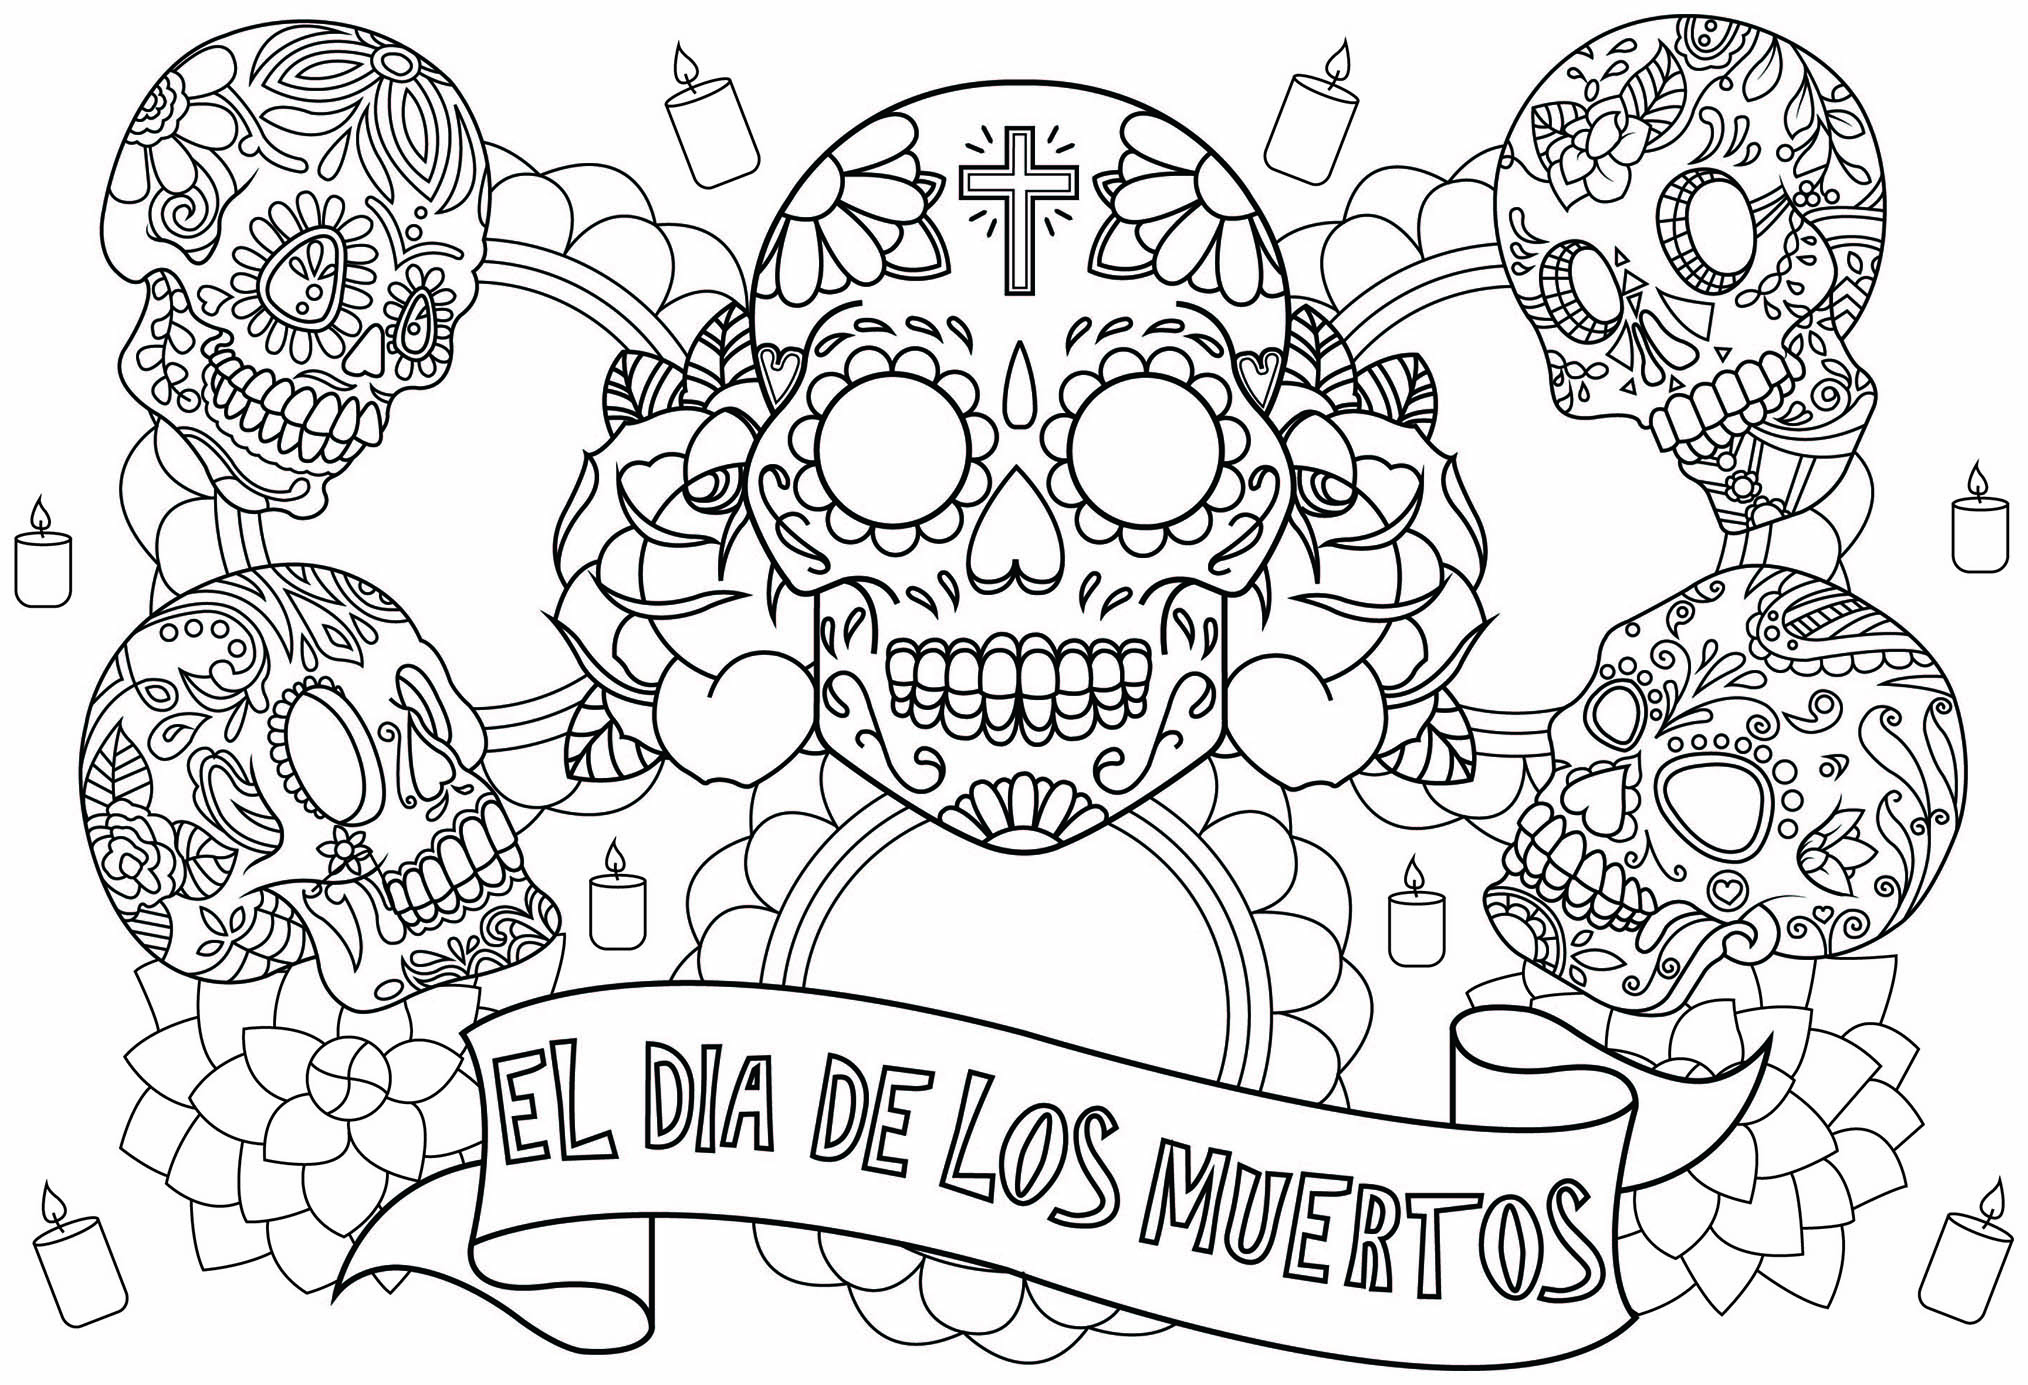 Desenhos grátis para colorir de El Dia de Los Muertos para imprimir e colorir